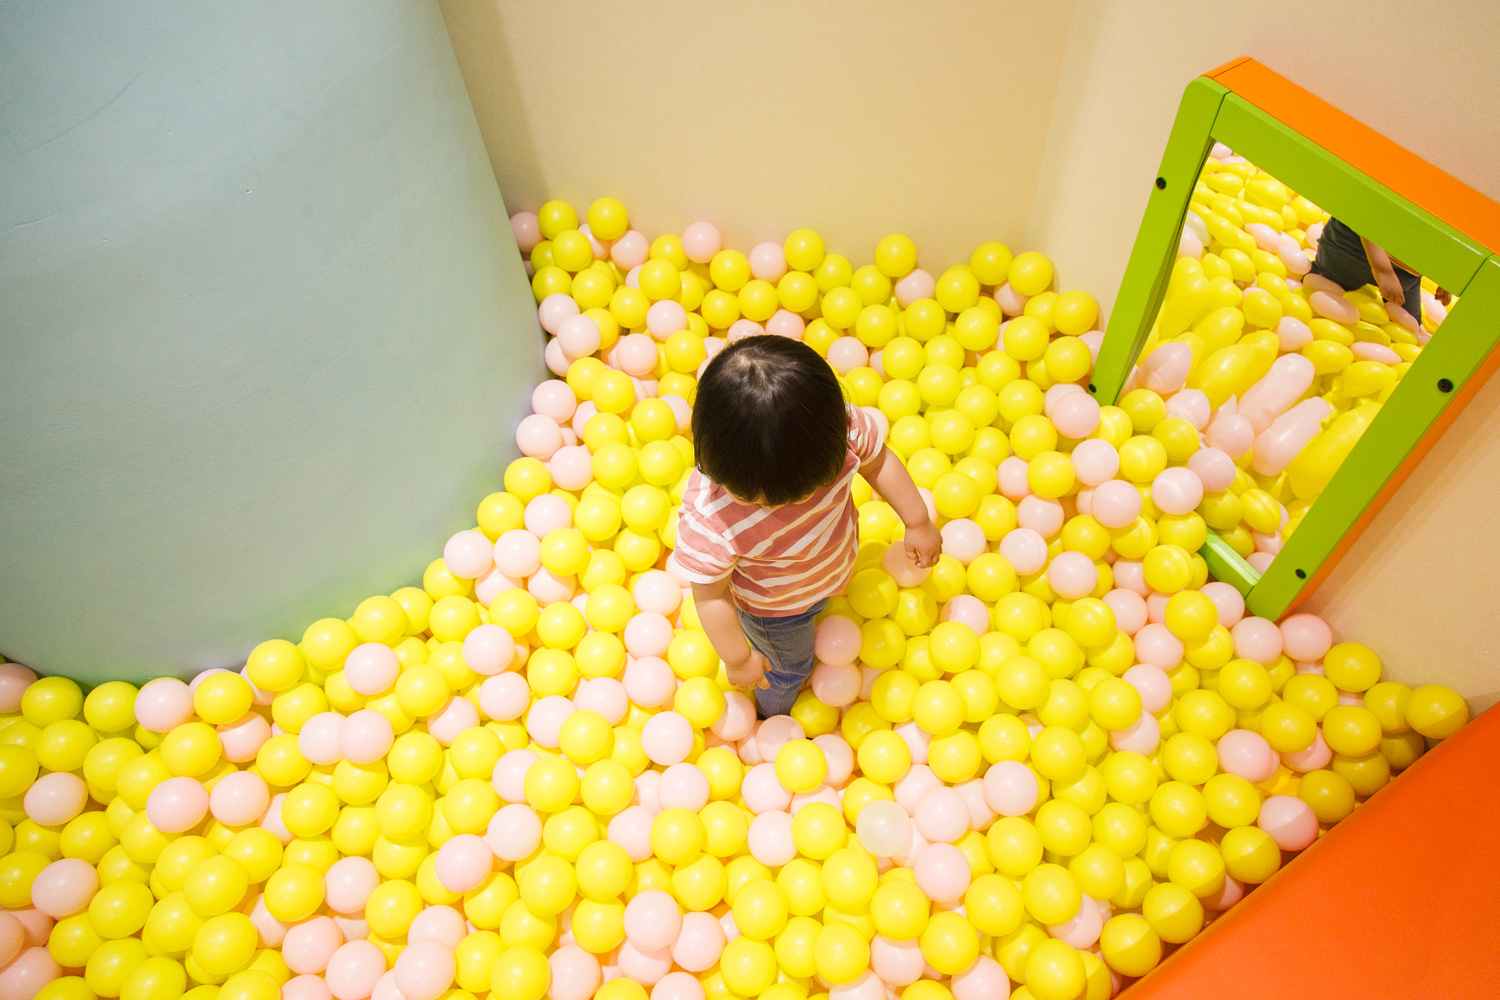 ボールの中に潜ってみたり、投げてみたり、遊び方は子ども次第。